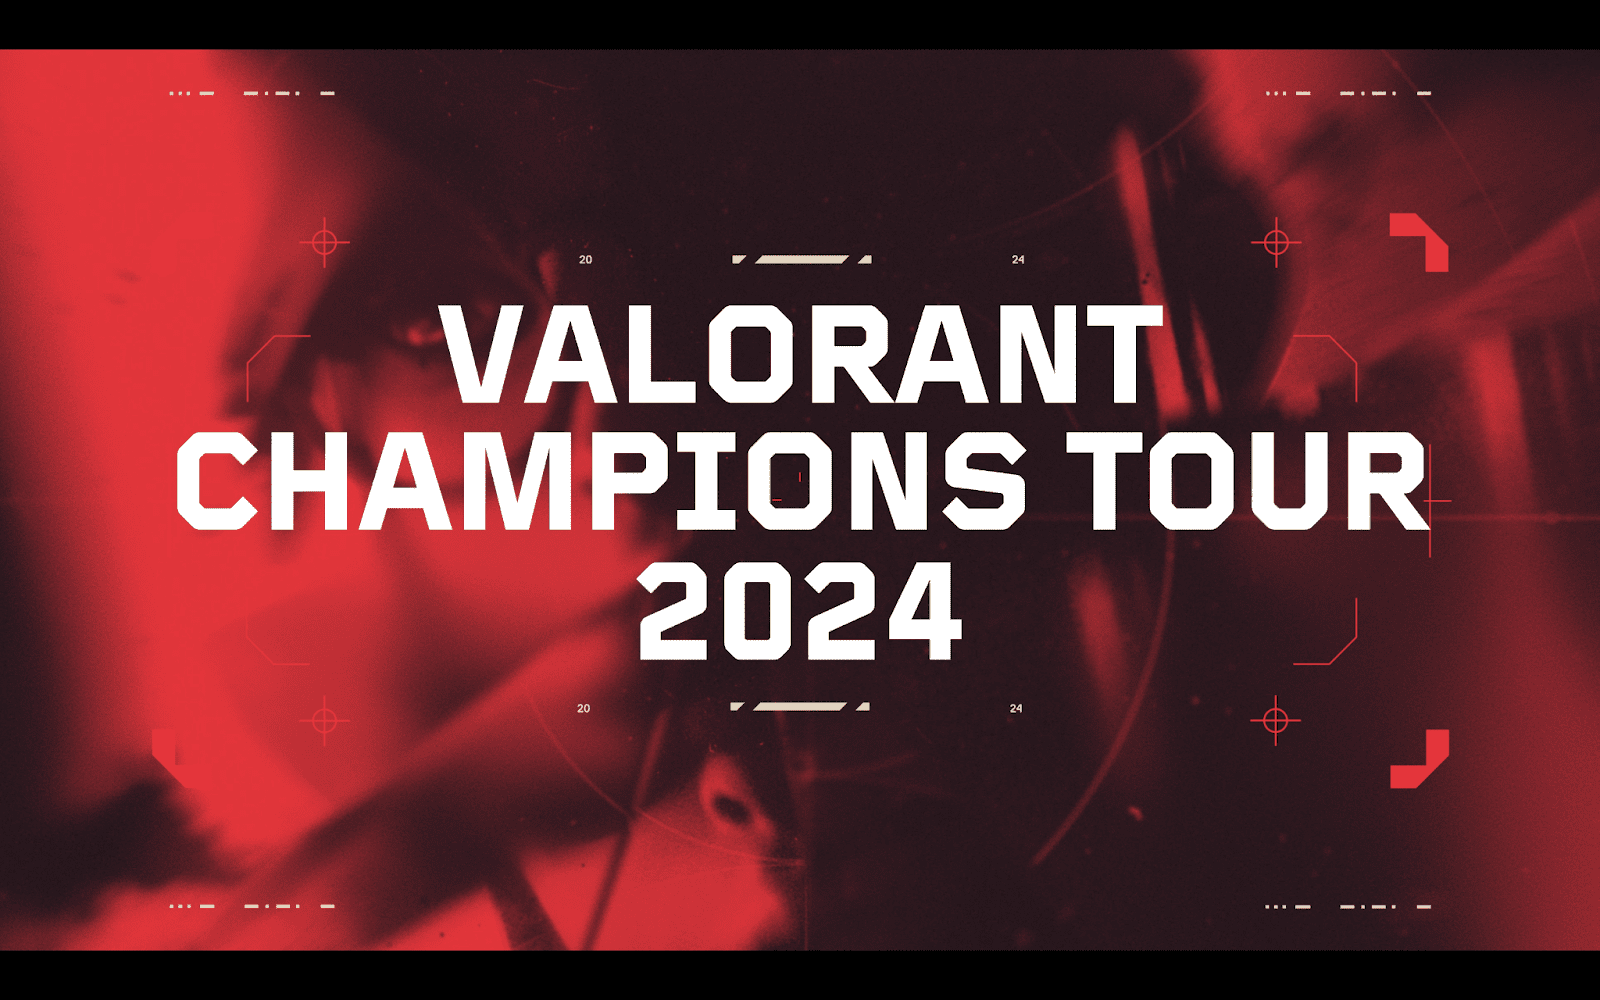 VALORANT terá campeonatos de janeiro a dezembro em 2024